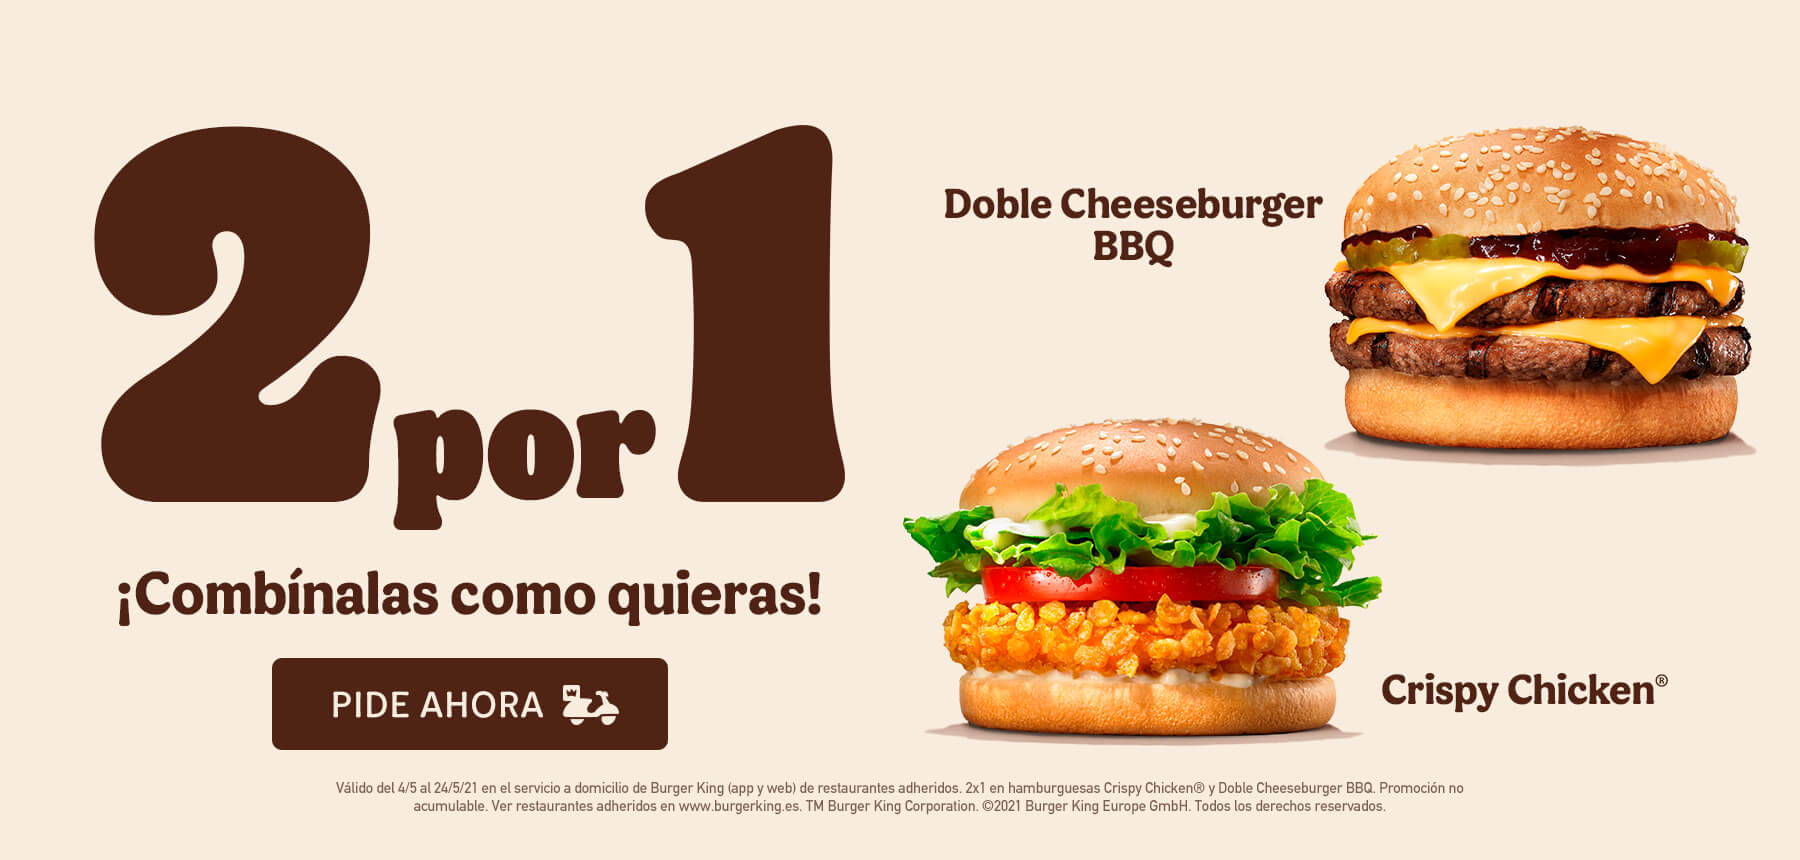 2x1 en hamburguesas Crispy Chicken y Doble Cheeseburger BBQ en pedidos en el servicio a domicilio de Burger King (App y web)